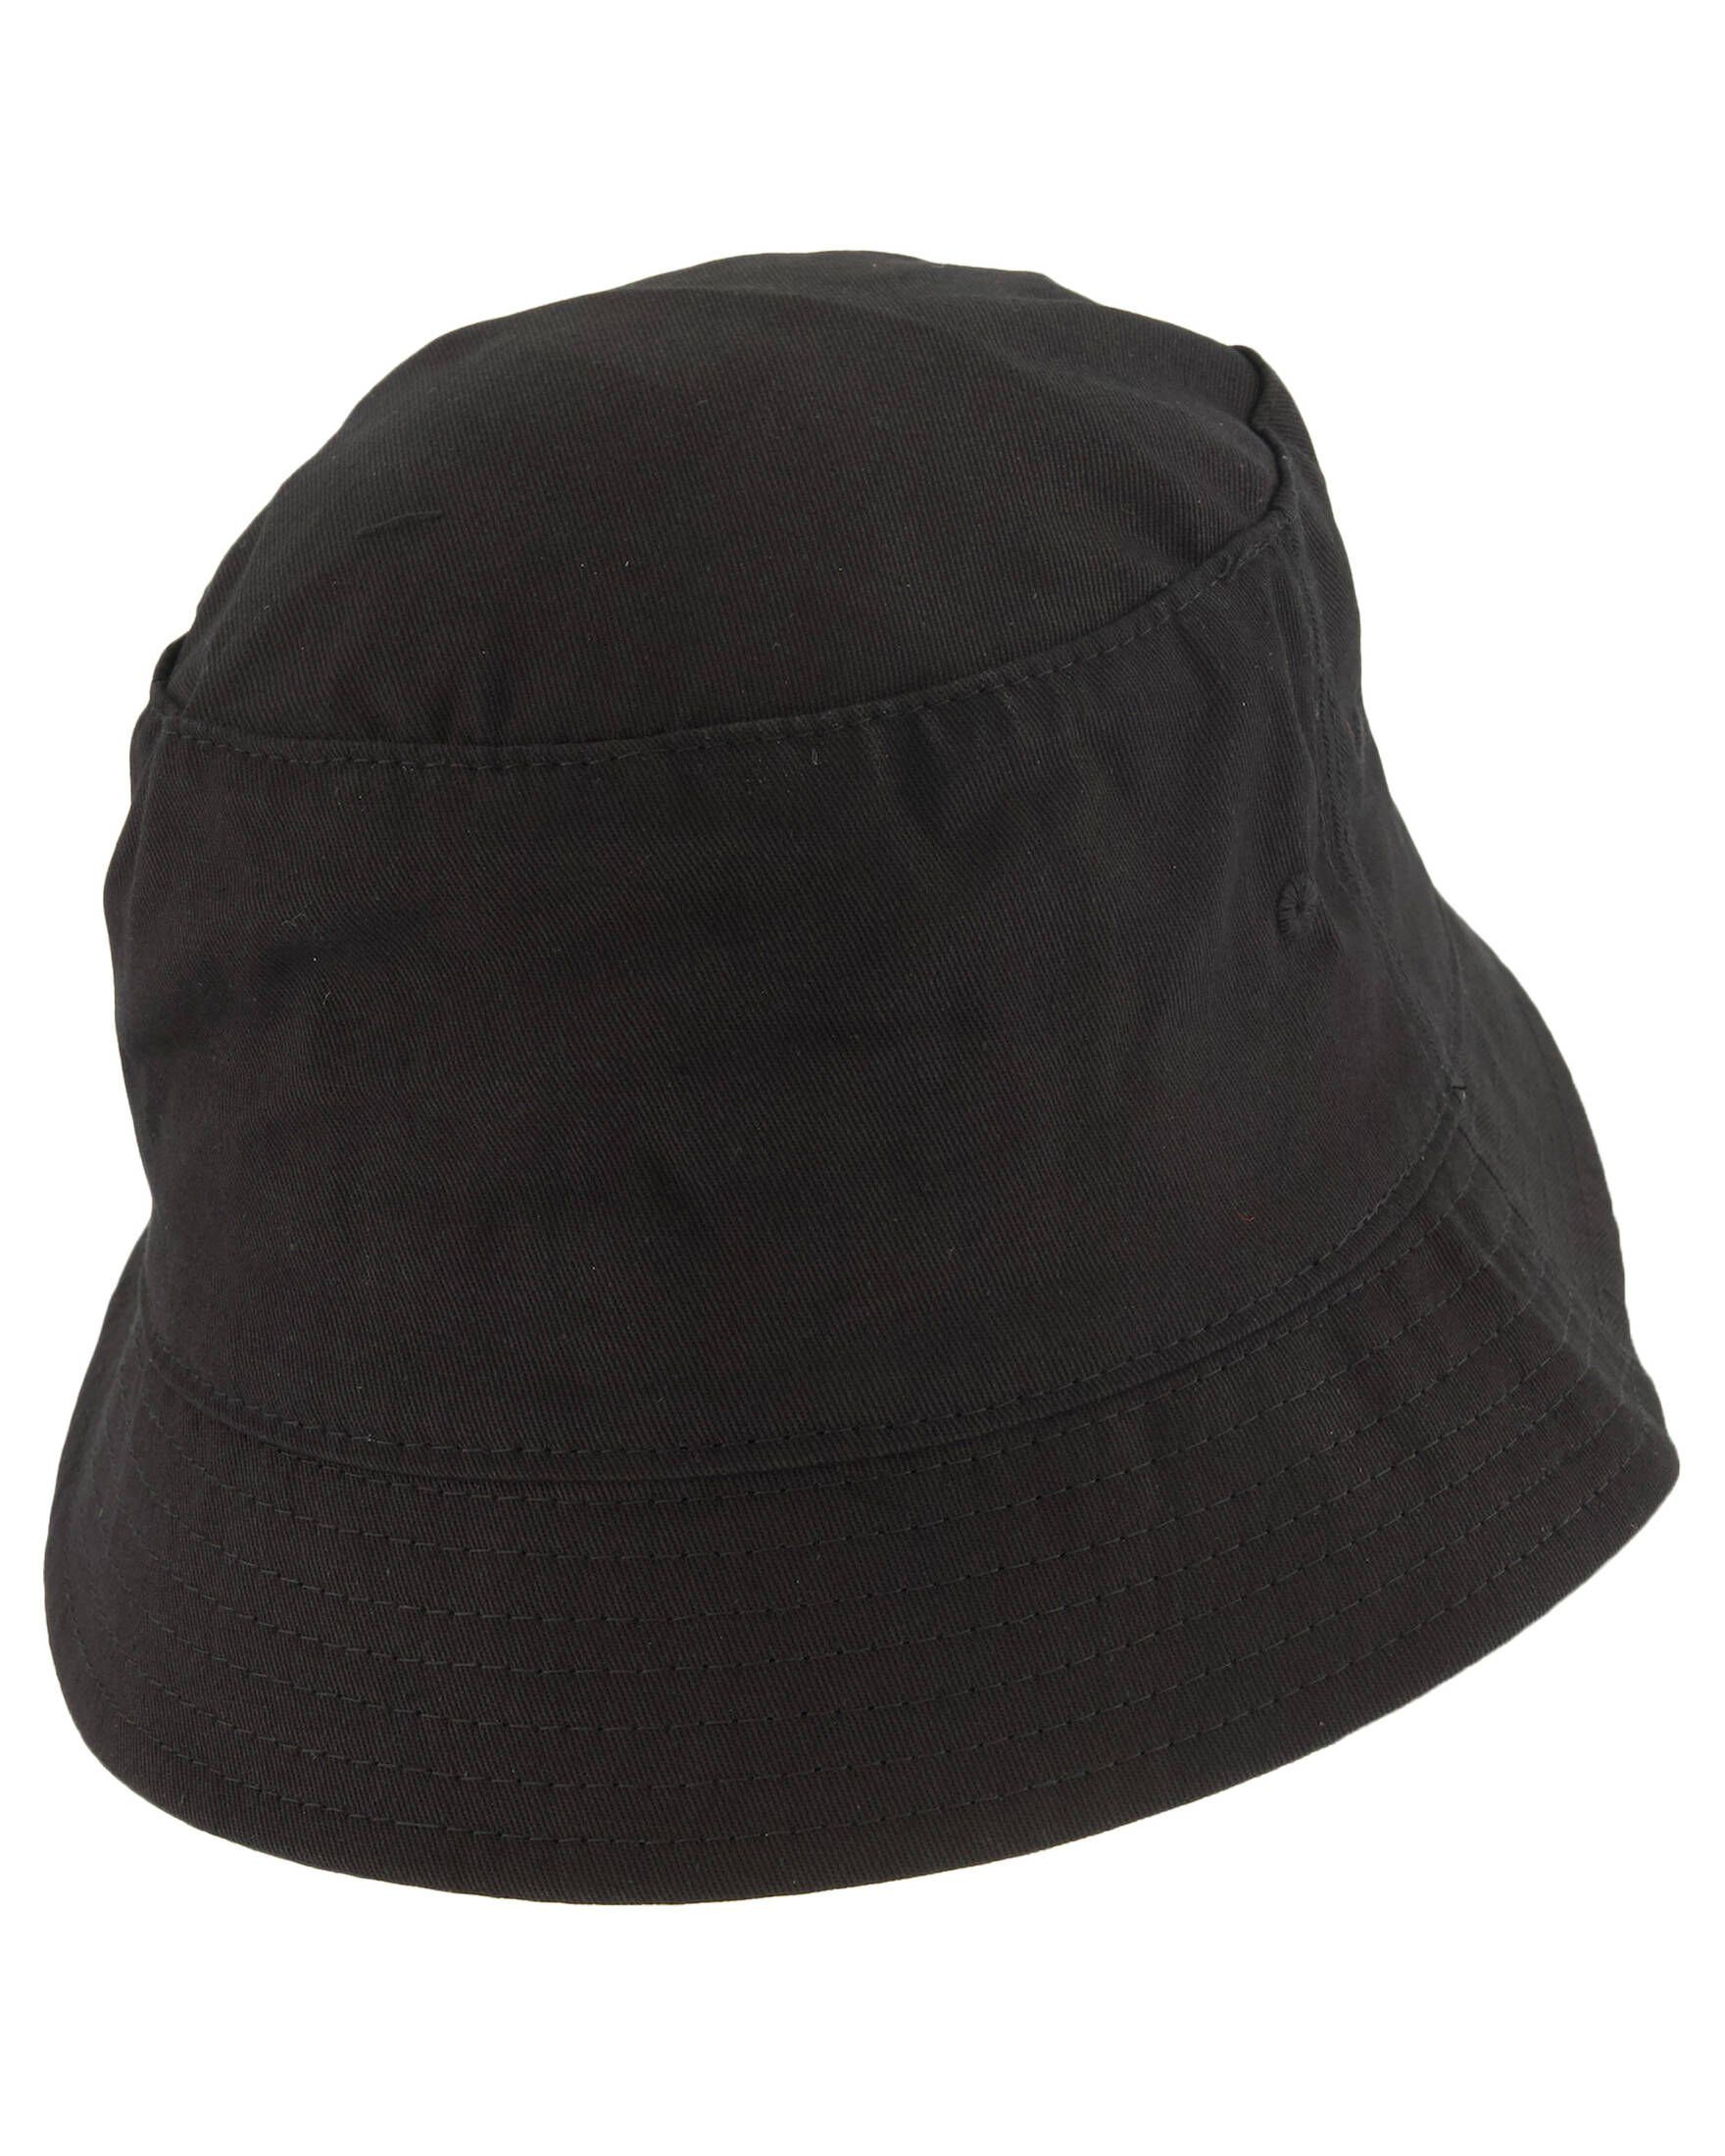 GO Sonnenhut LOGO Damen GUESS Hat Bucket Originals